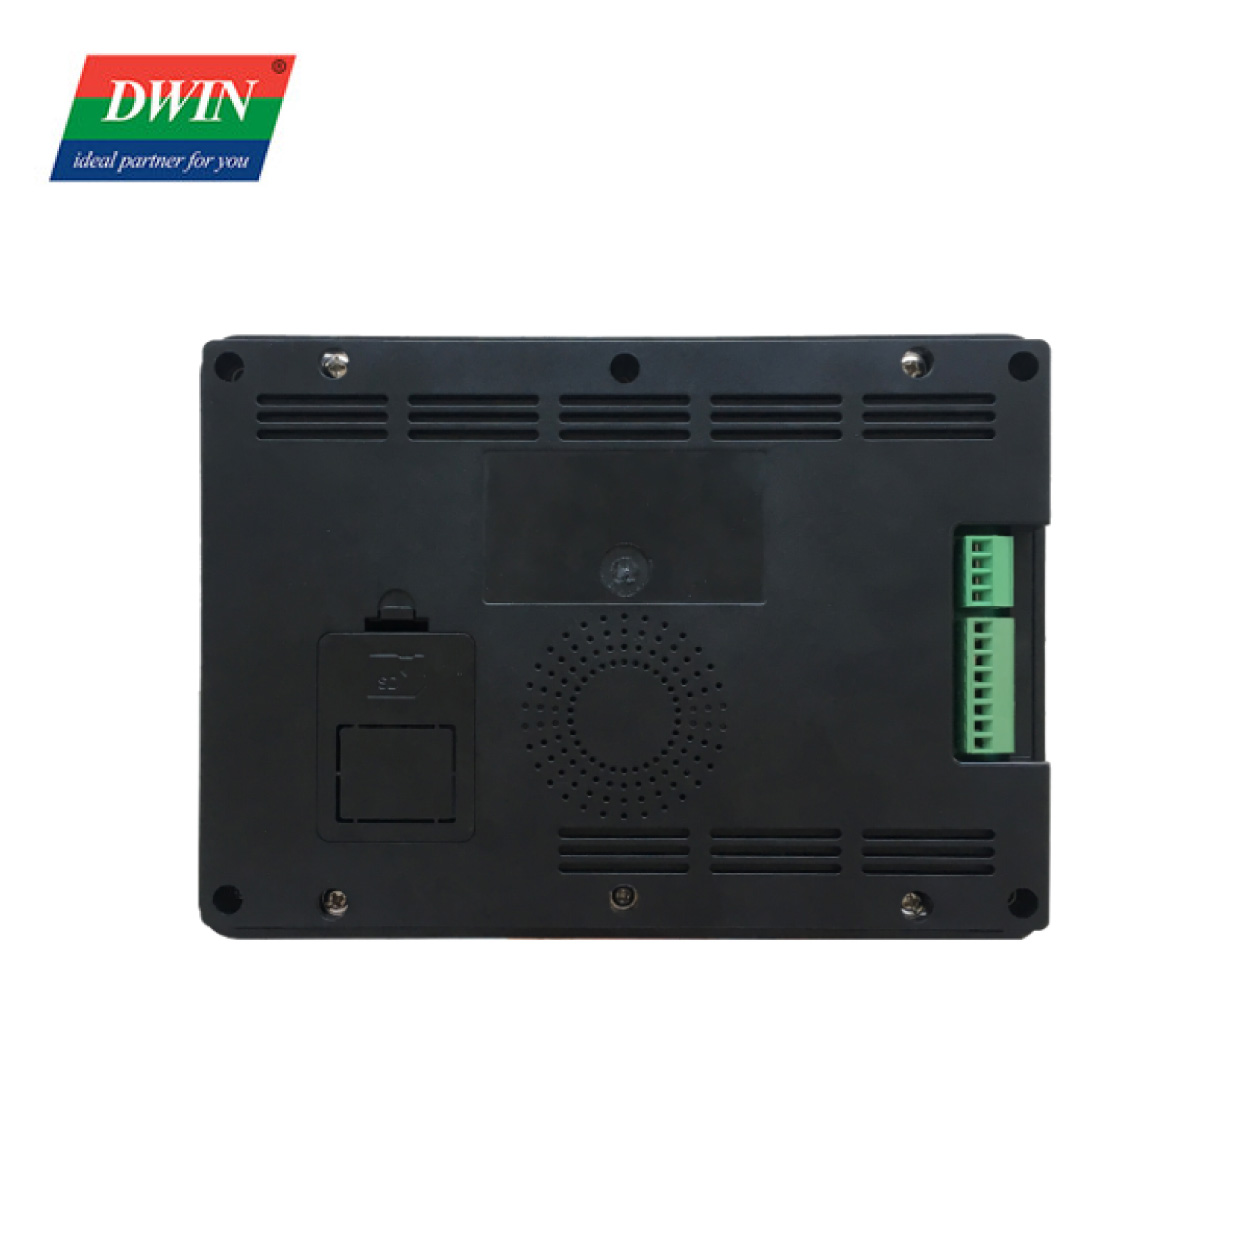 7,0 tum CAN LCD pekskärm DMG10600T070_A5W (industriell kvalitet)